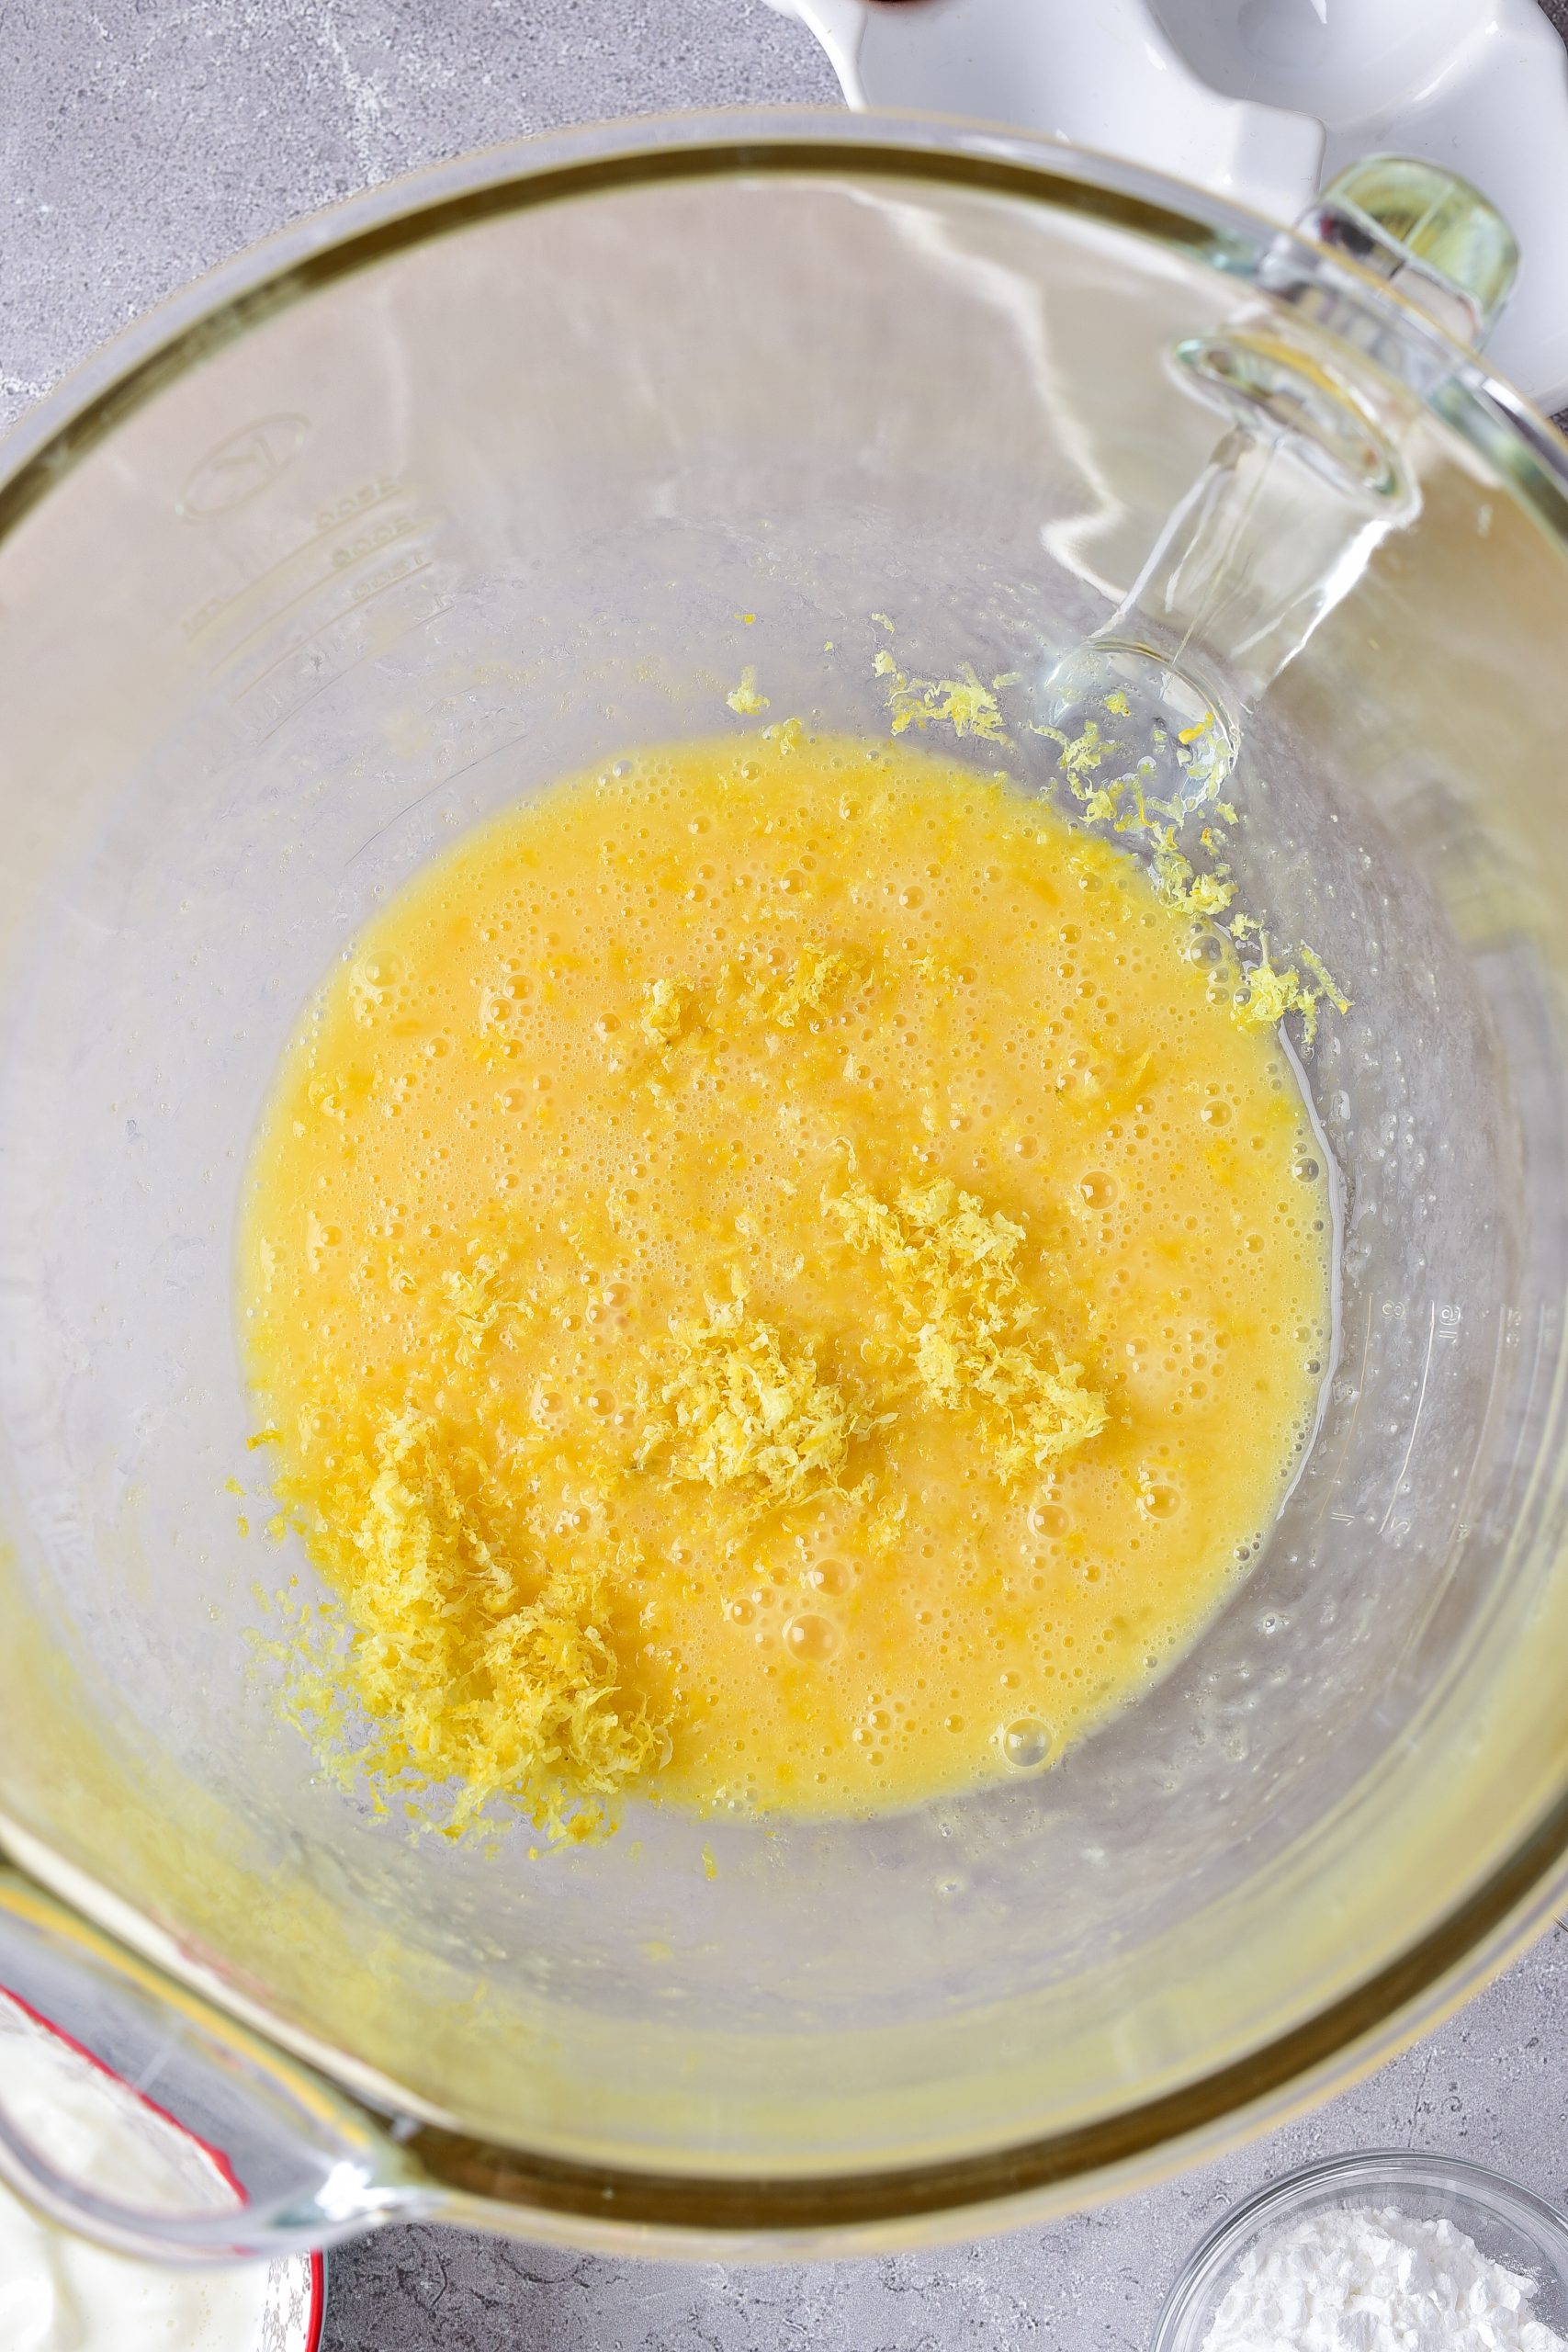 Blend together the eggs, sugar, lemon zest, and lemon juice until well combined. 